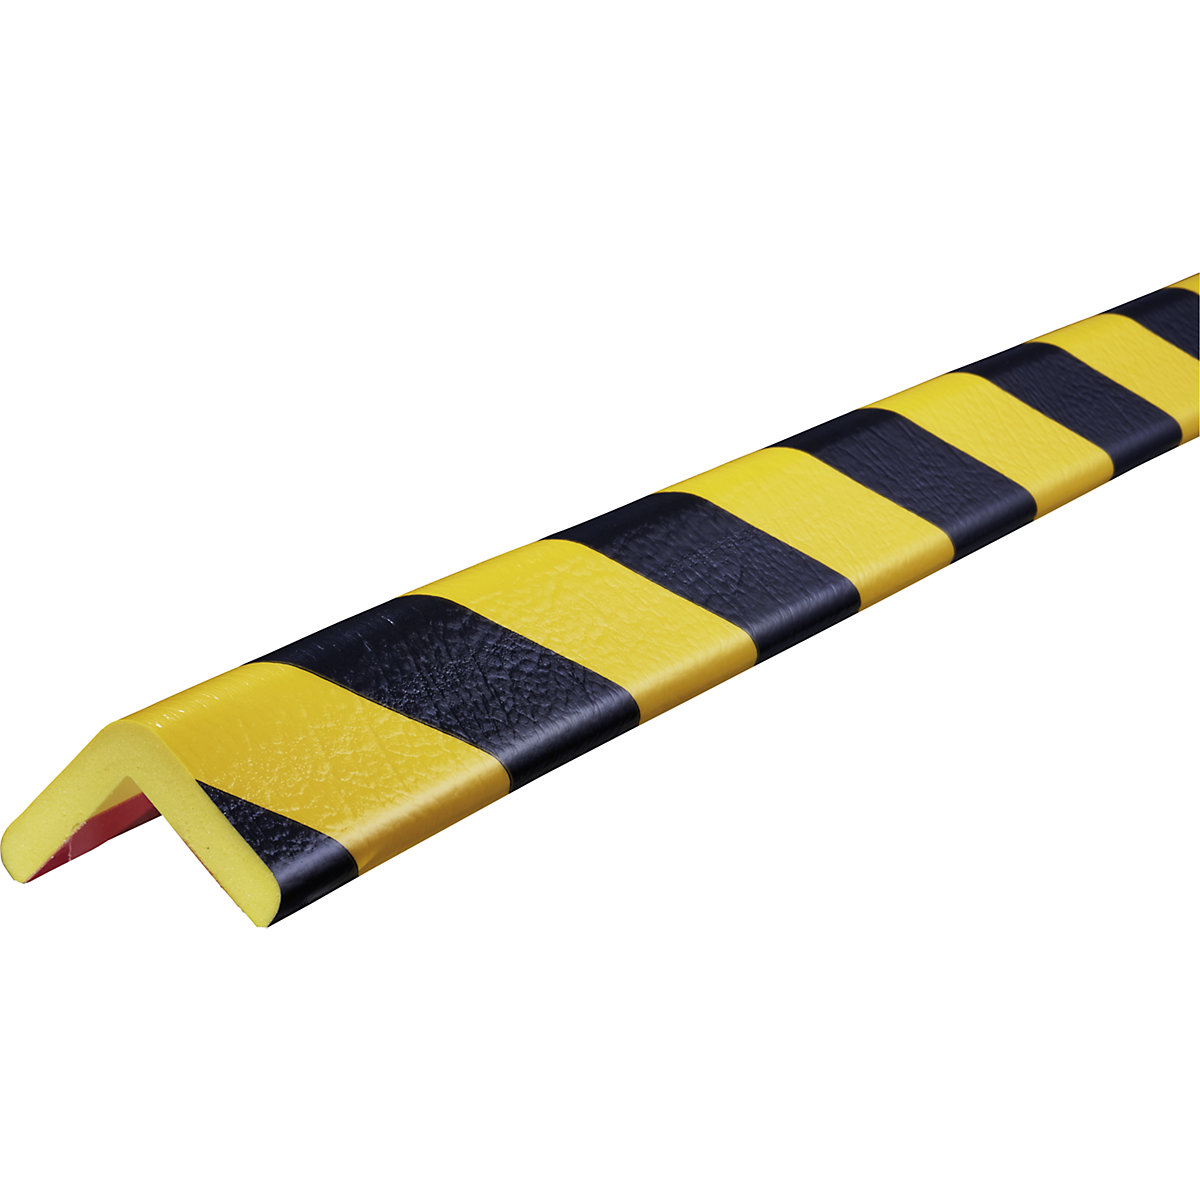 Knuffi®-hoekbescherming – SHG, type H FROST, stuk van 1 m, zwart/geel-10